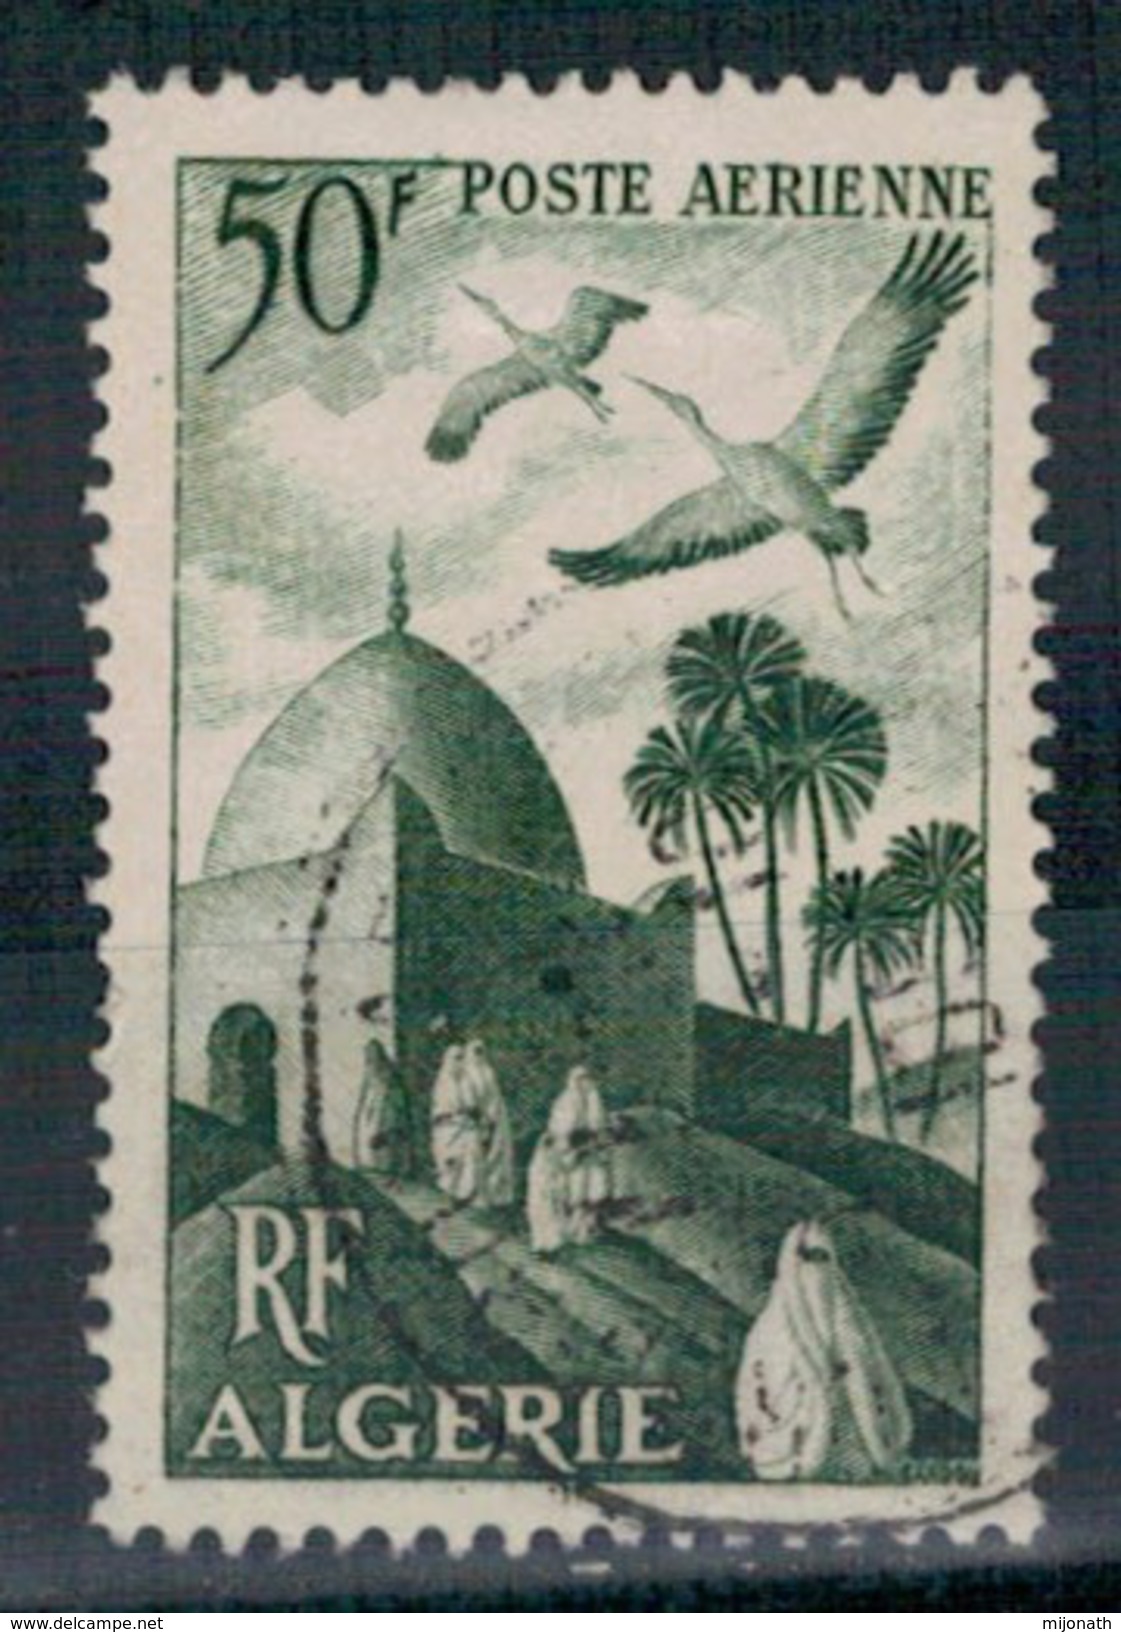 Ph-Algérie- Poste Aérienne-Y&T N°9 - Oblitéré 1949 - Posta Aerea